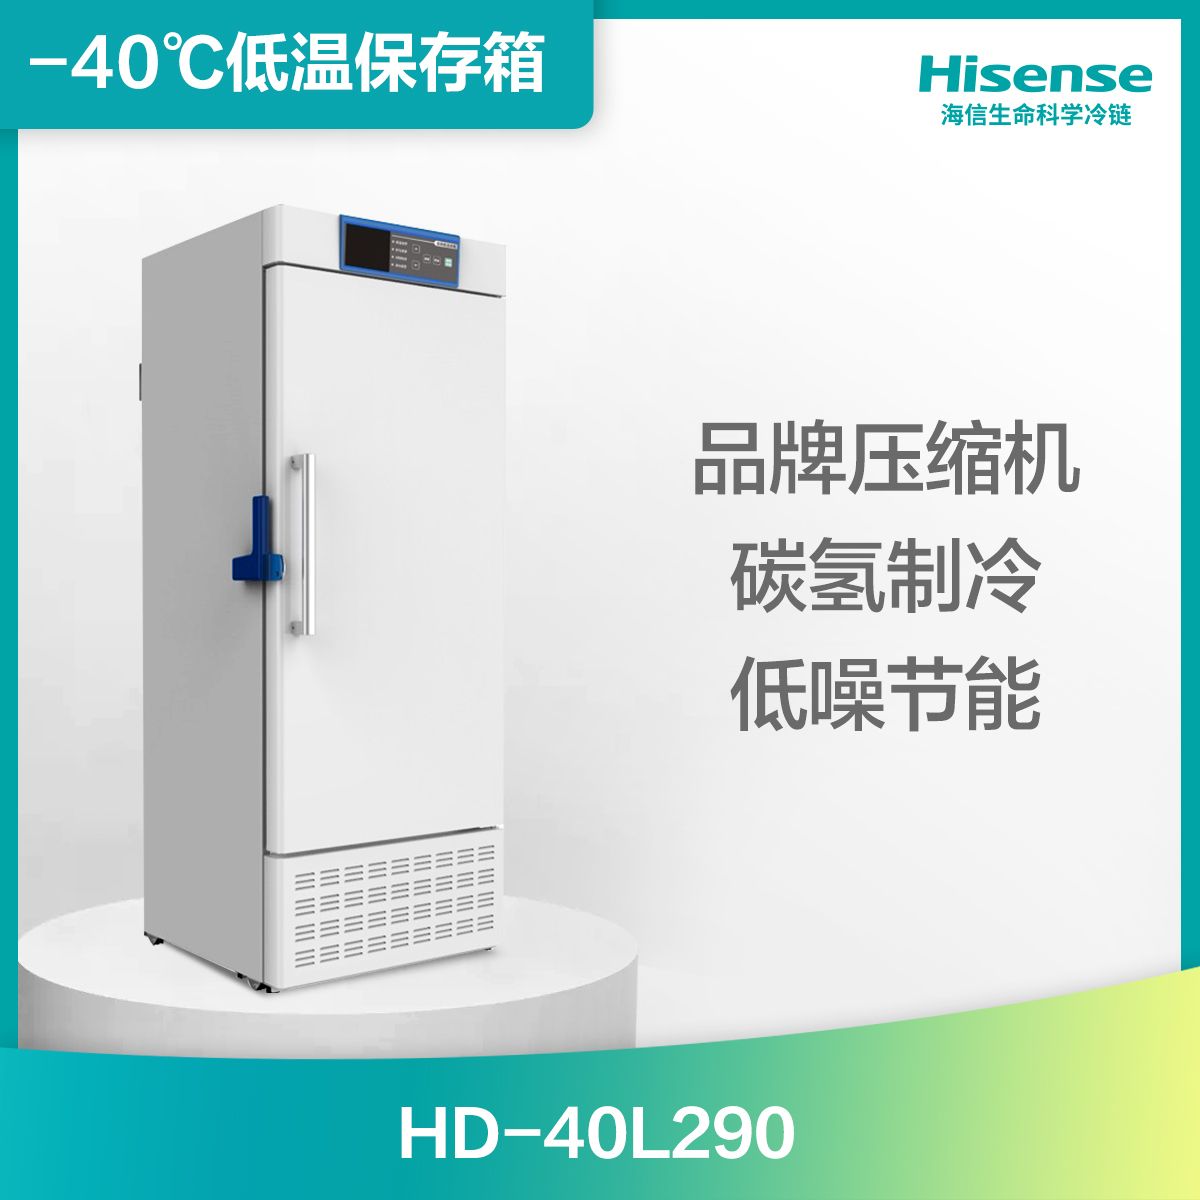 海信-40℃低温保存箱